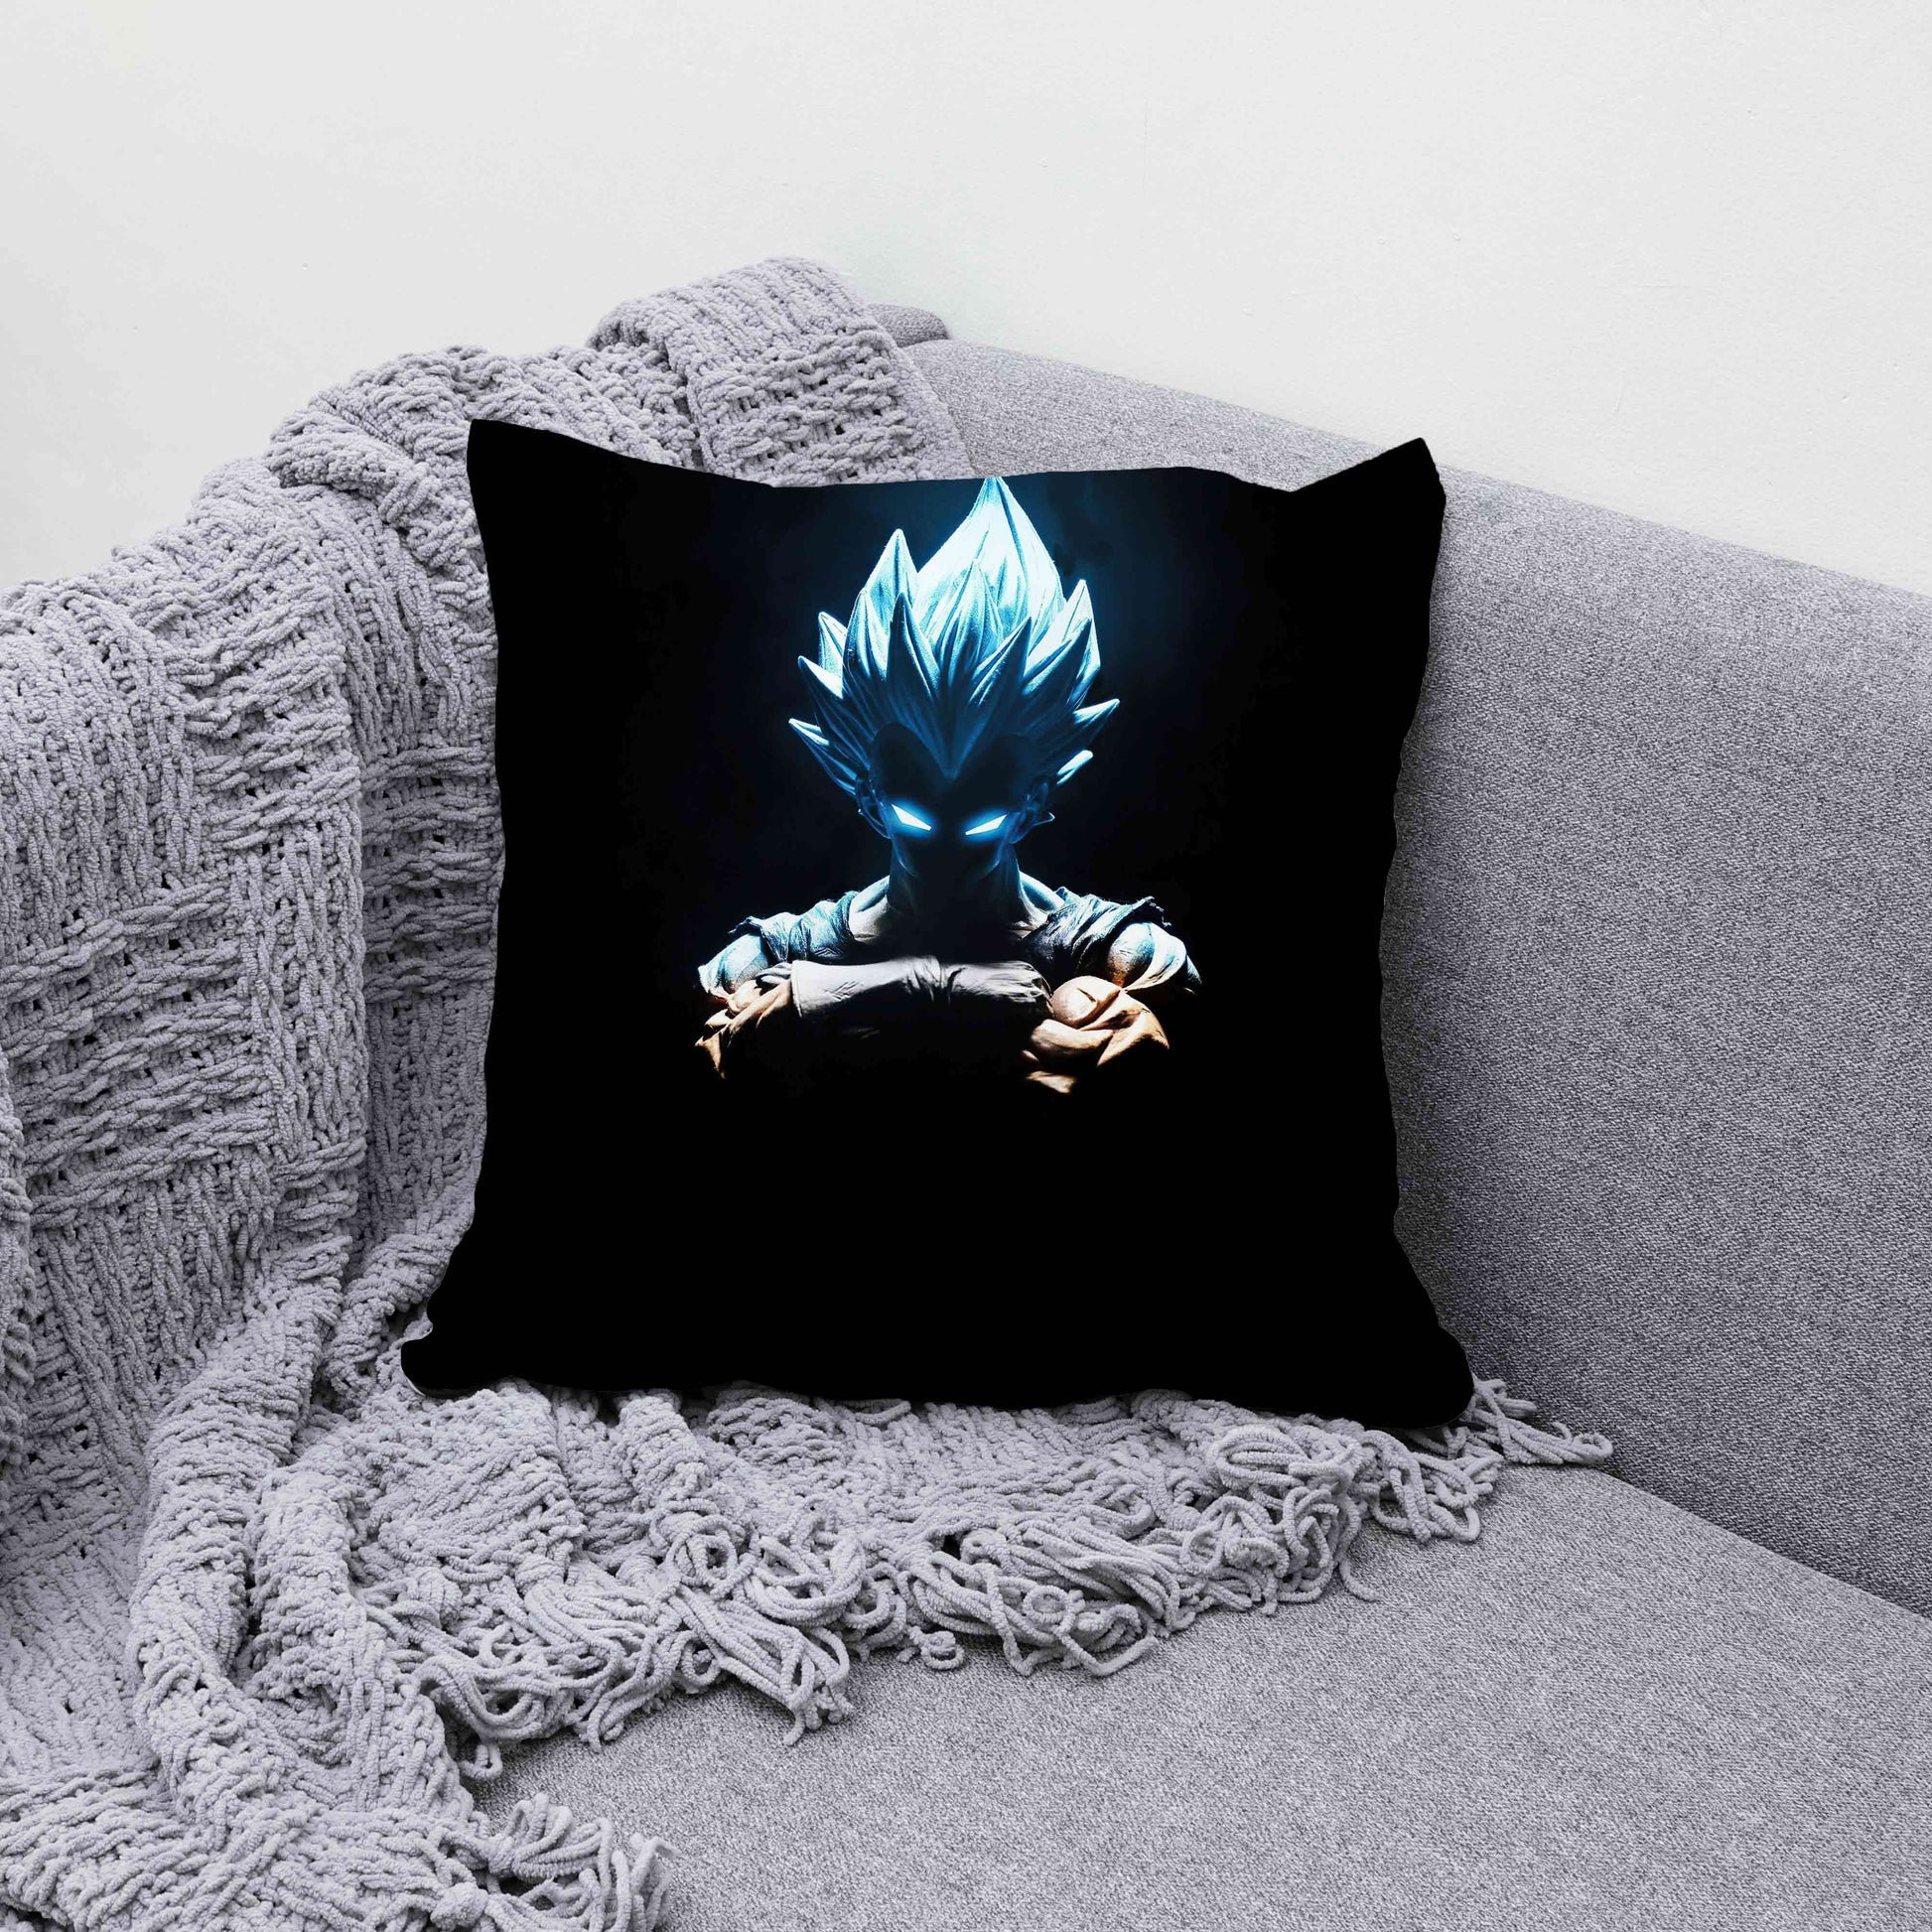 Vegeta's Rage Cushion Cover trendy home